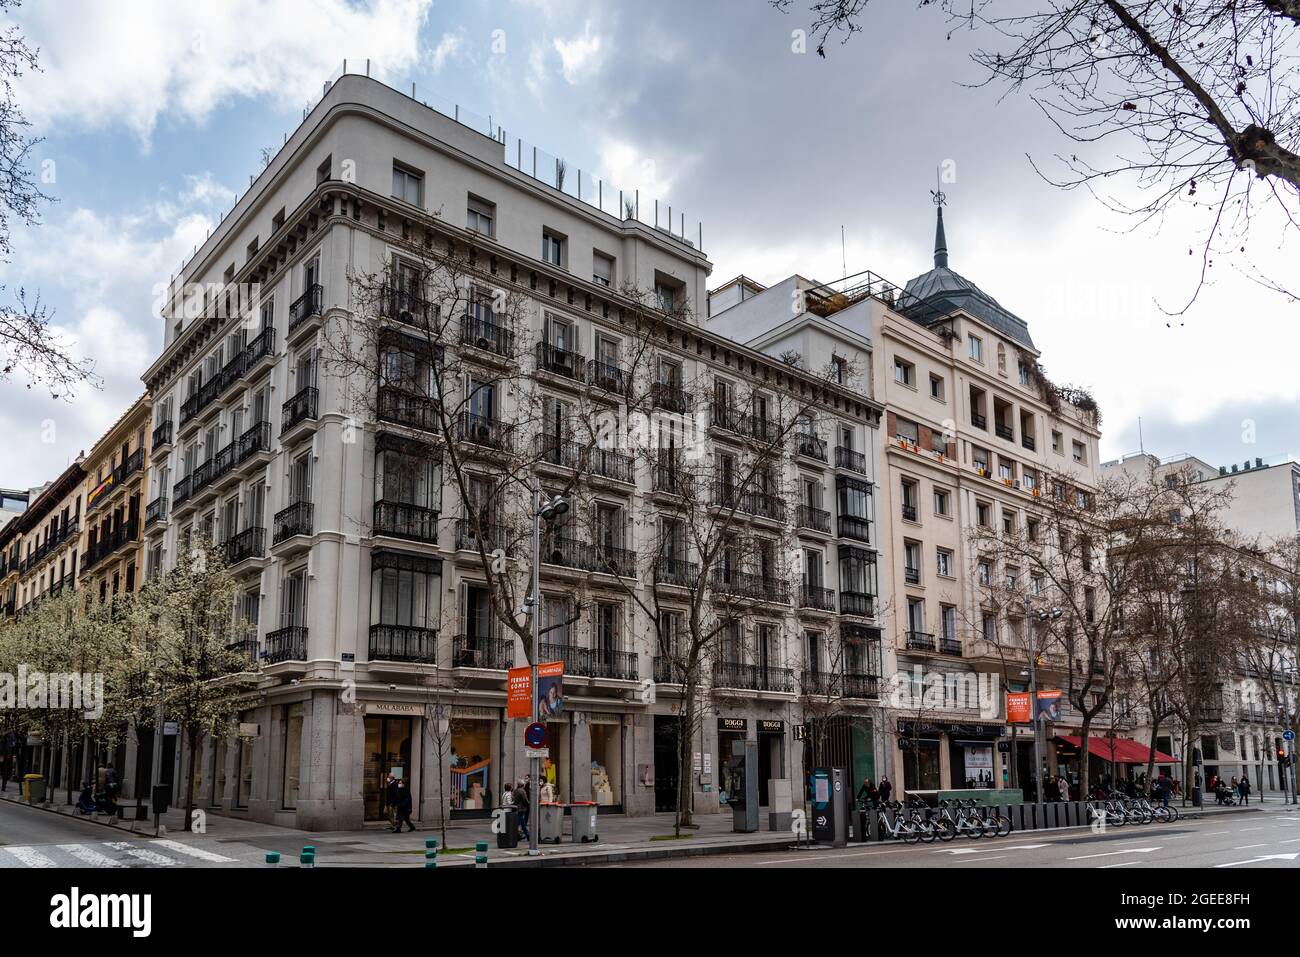 Madrid, Espagne - 7 mars 2021 : vue panoramique sur la rue Serrano, une rue commerçante bien connue dans le quartier de Salamanque, un des quartiers les plus riches avec une h Banque D'Images